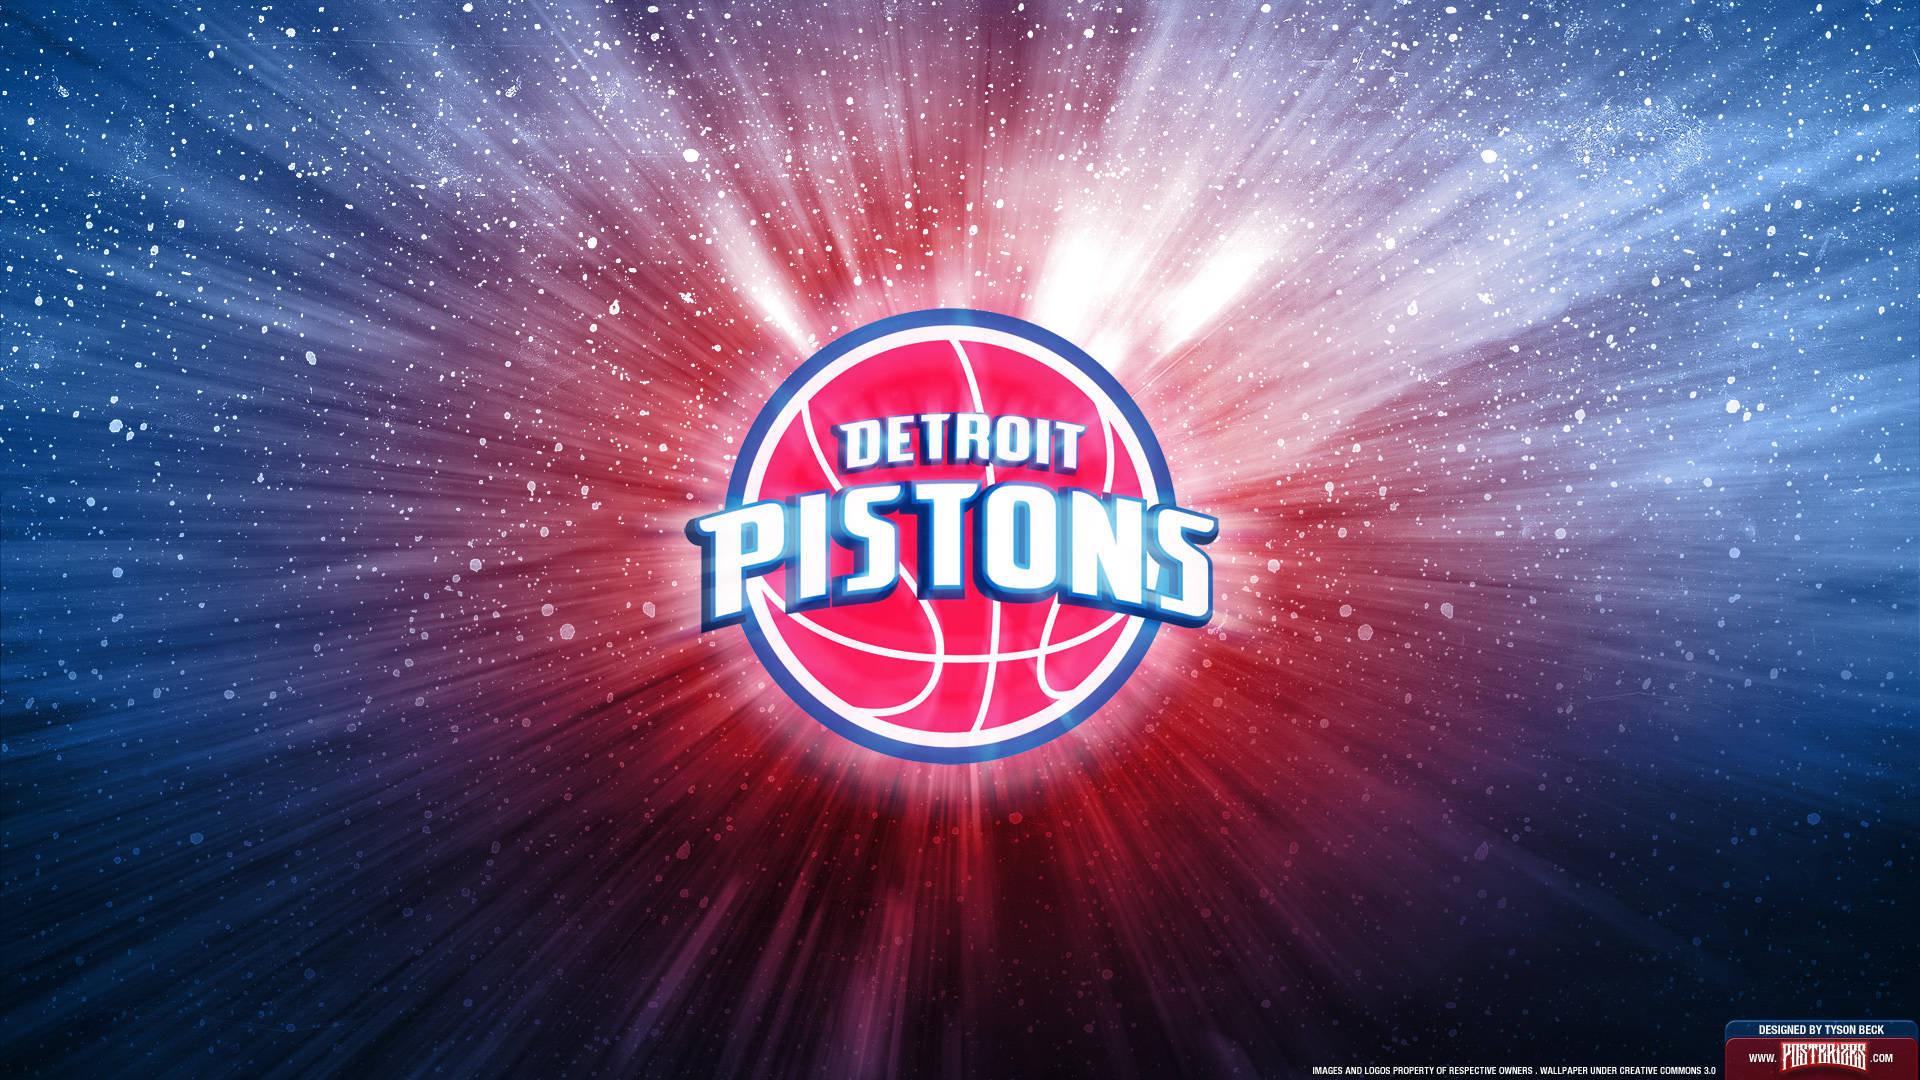 Detroit Pistons Basketball Team Background